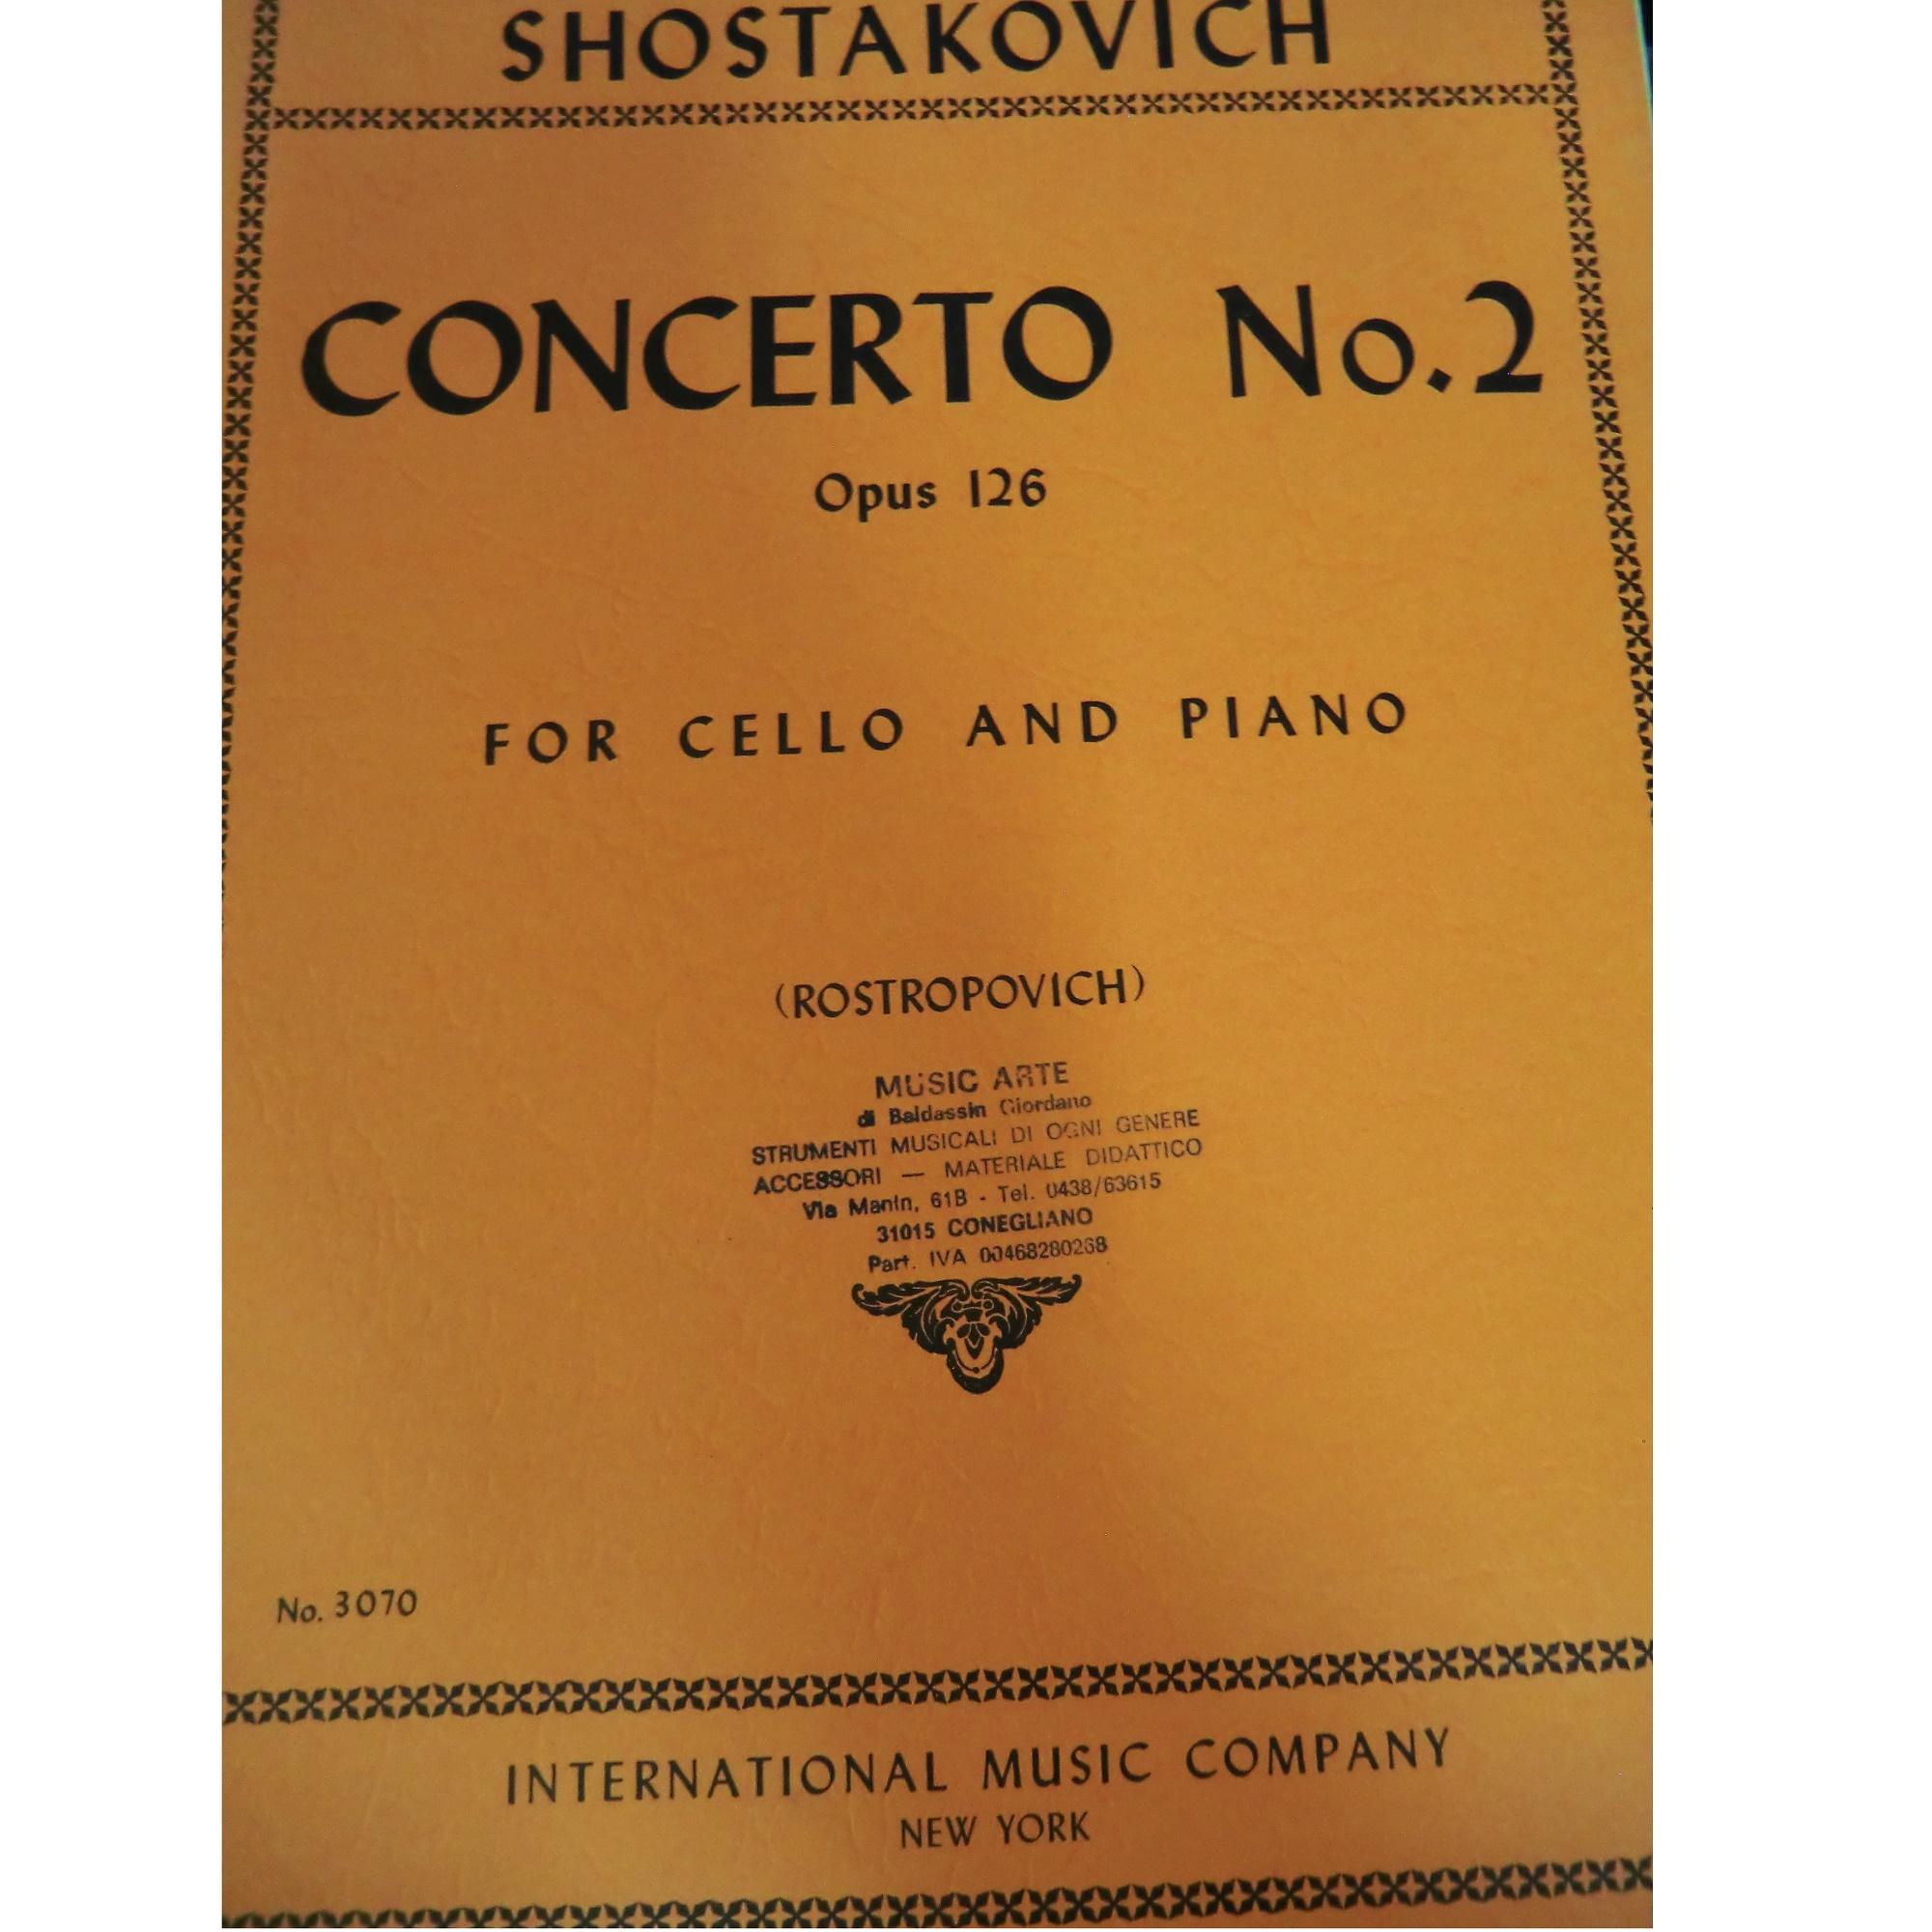 Shostakovich Concerto No. 2 Opus 125 For Cello and Piano (Rostropovich) - International Music Company 